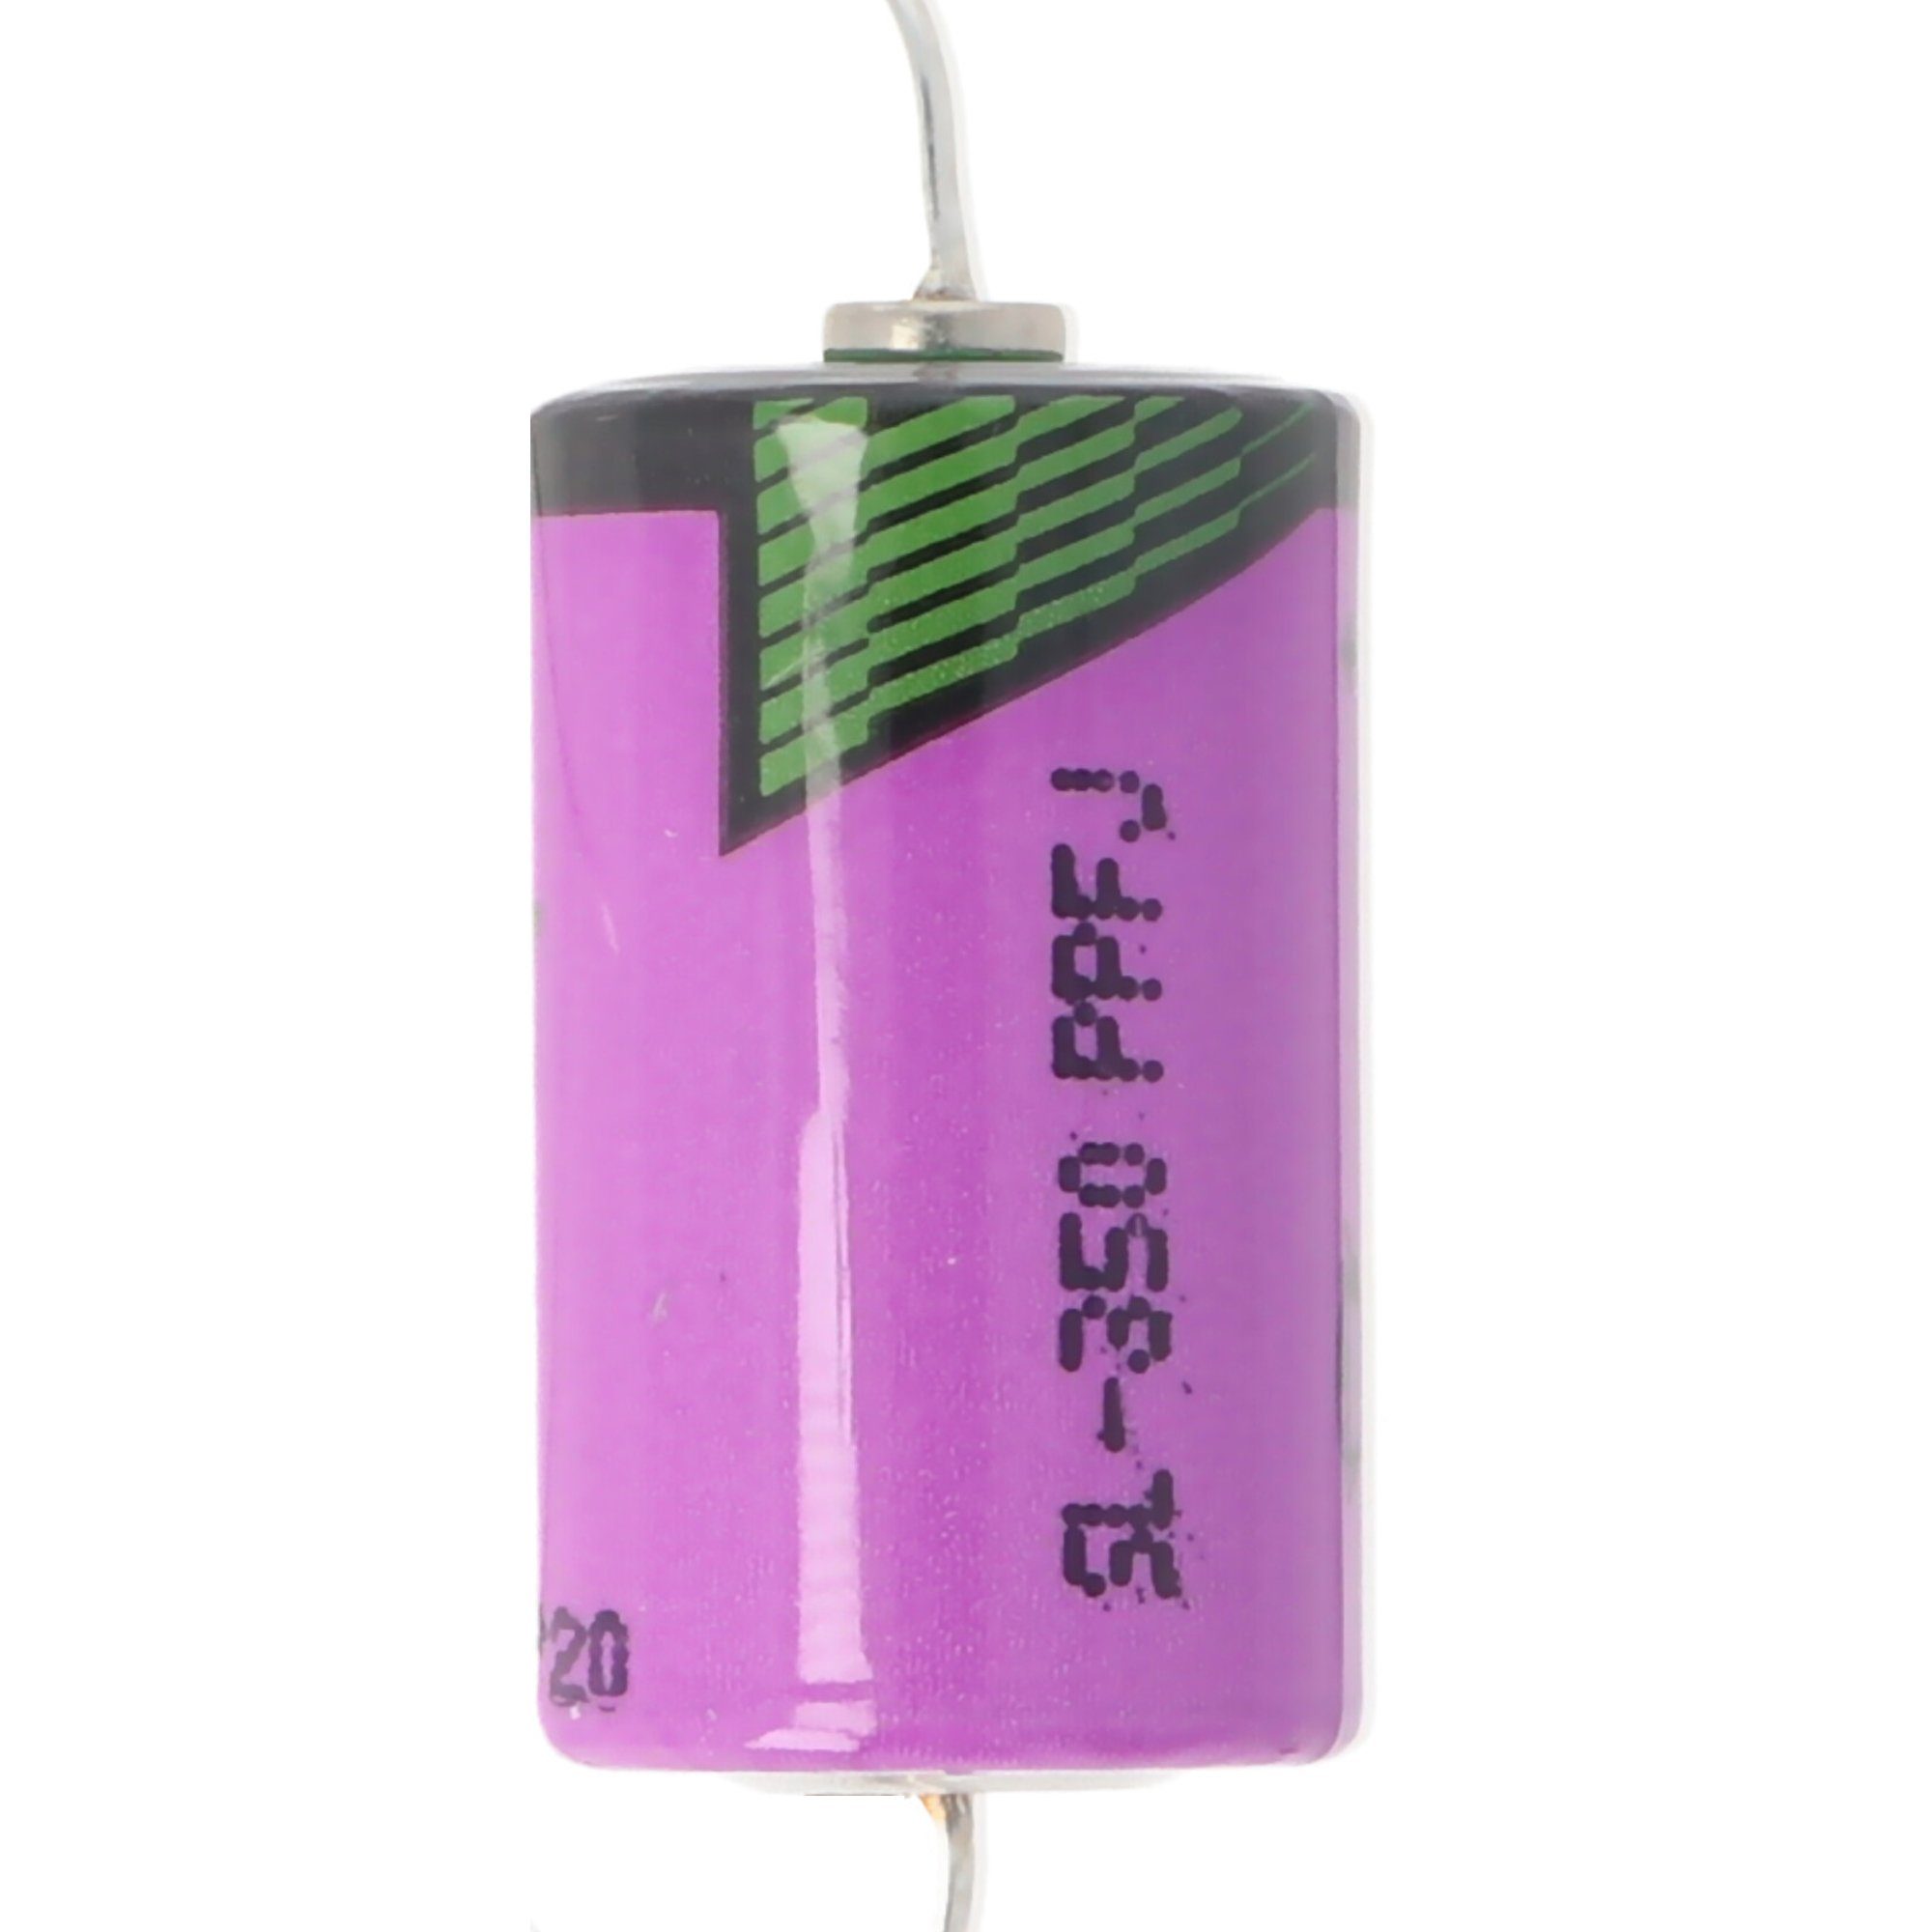 Tadiran Batterie passend für Eaton Pufferbatterie 049822 Typ ZB4-600-BT1 Moel Batterie, (3,6 V)